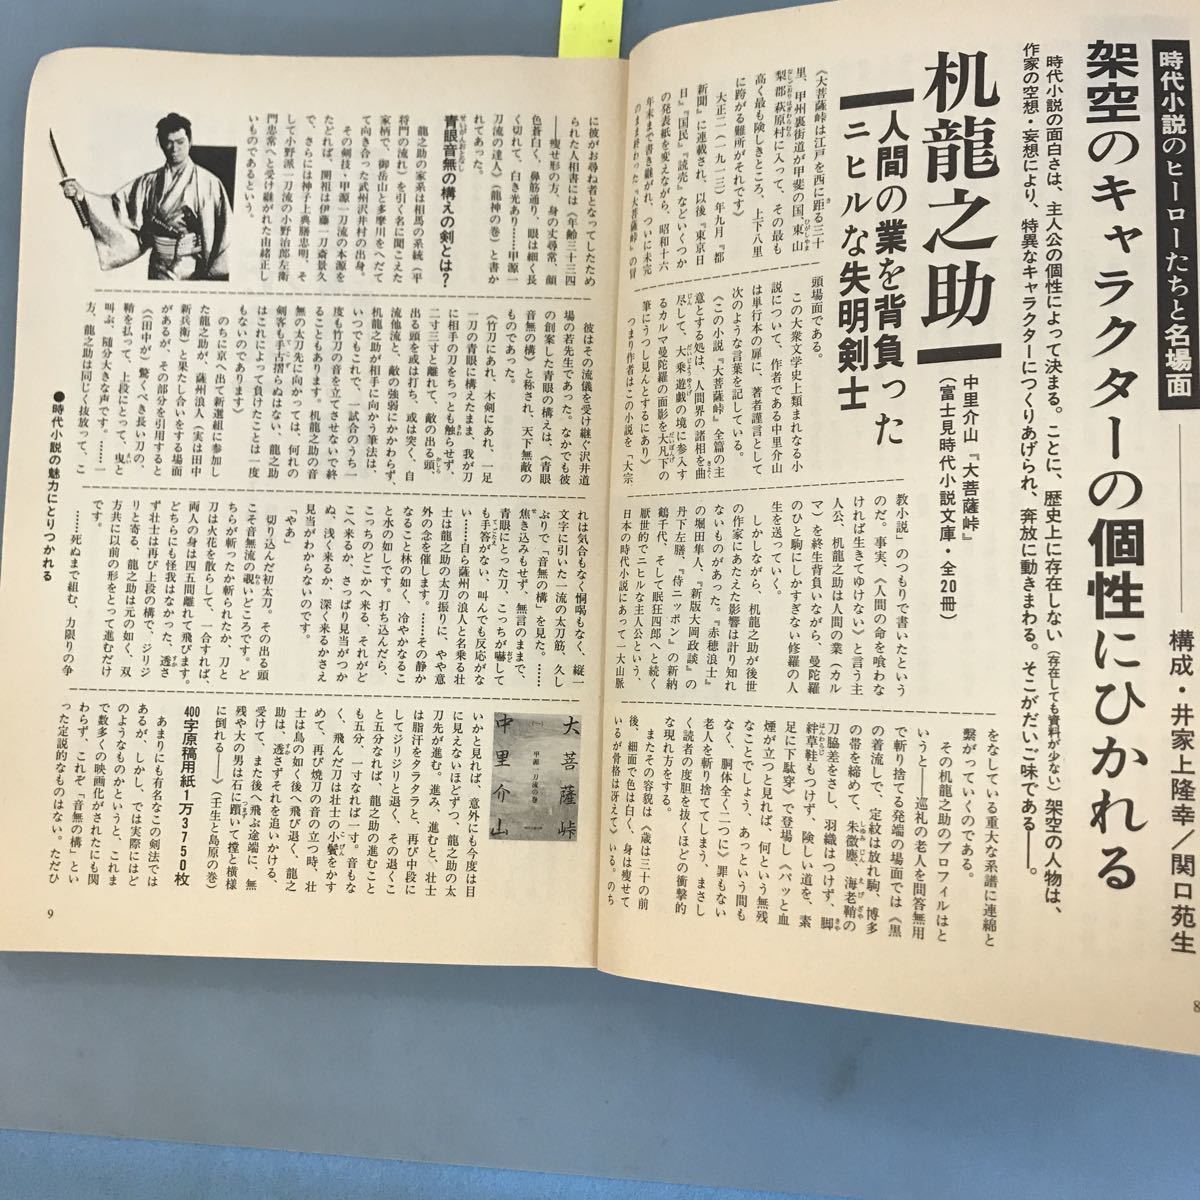 B09-168 ダカーポ 3/7 第200号 時代小説の魅力 大阪サラリーマン研究 個性的な出版社27を訪ねる マガジンハウス_画像6